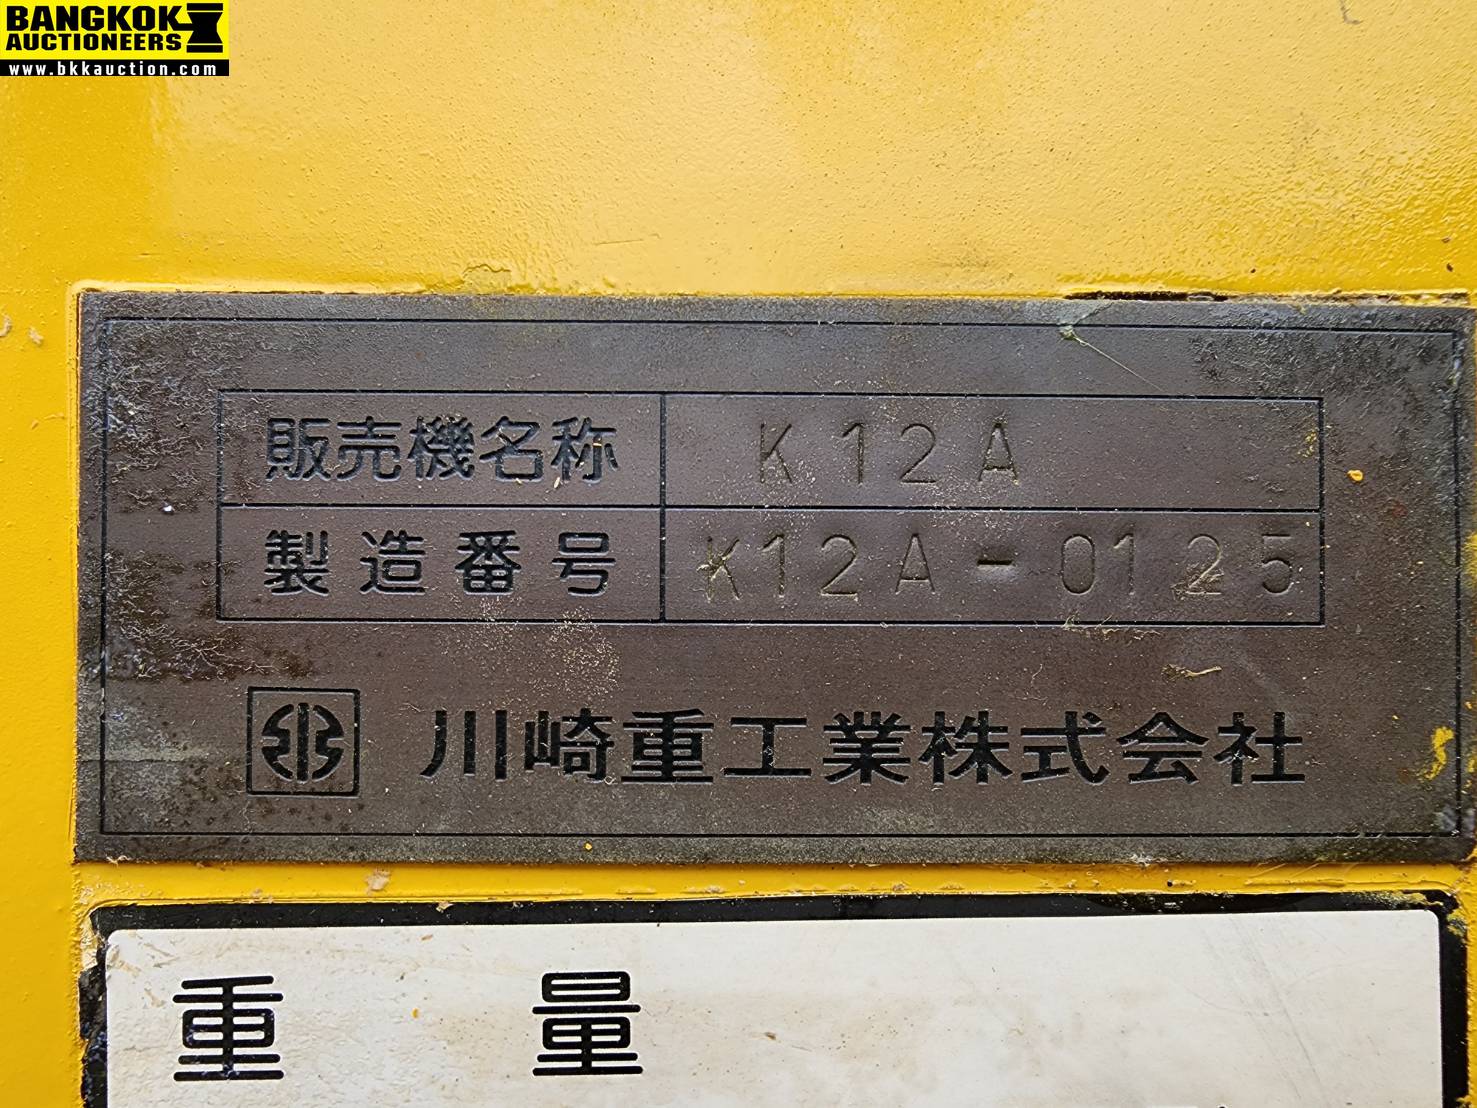 รถบดถนน KAWASAKI-K12A-0125